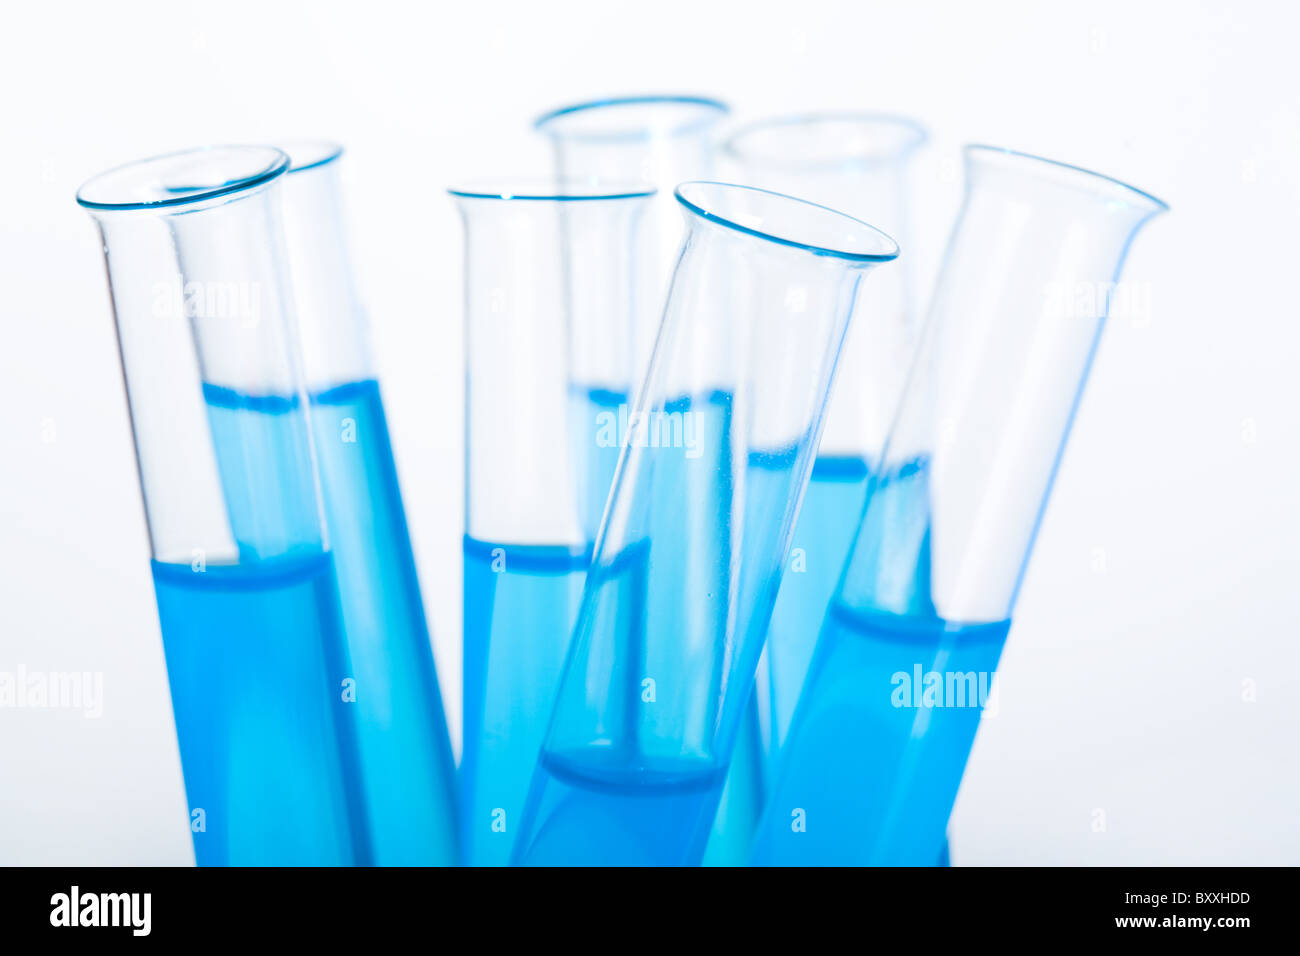 Immagine di diversi medici matracci con acqua blu su sfondo bianco Foto Stock